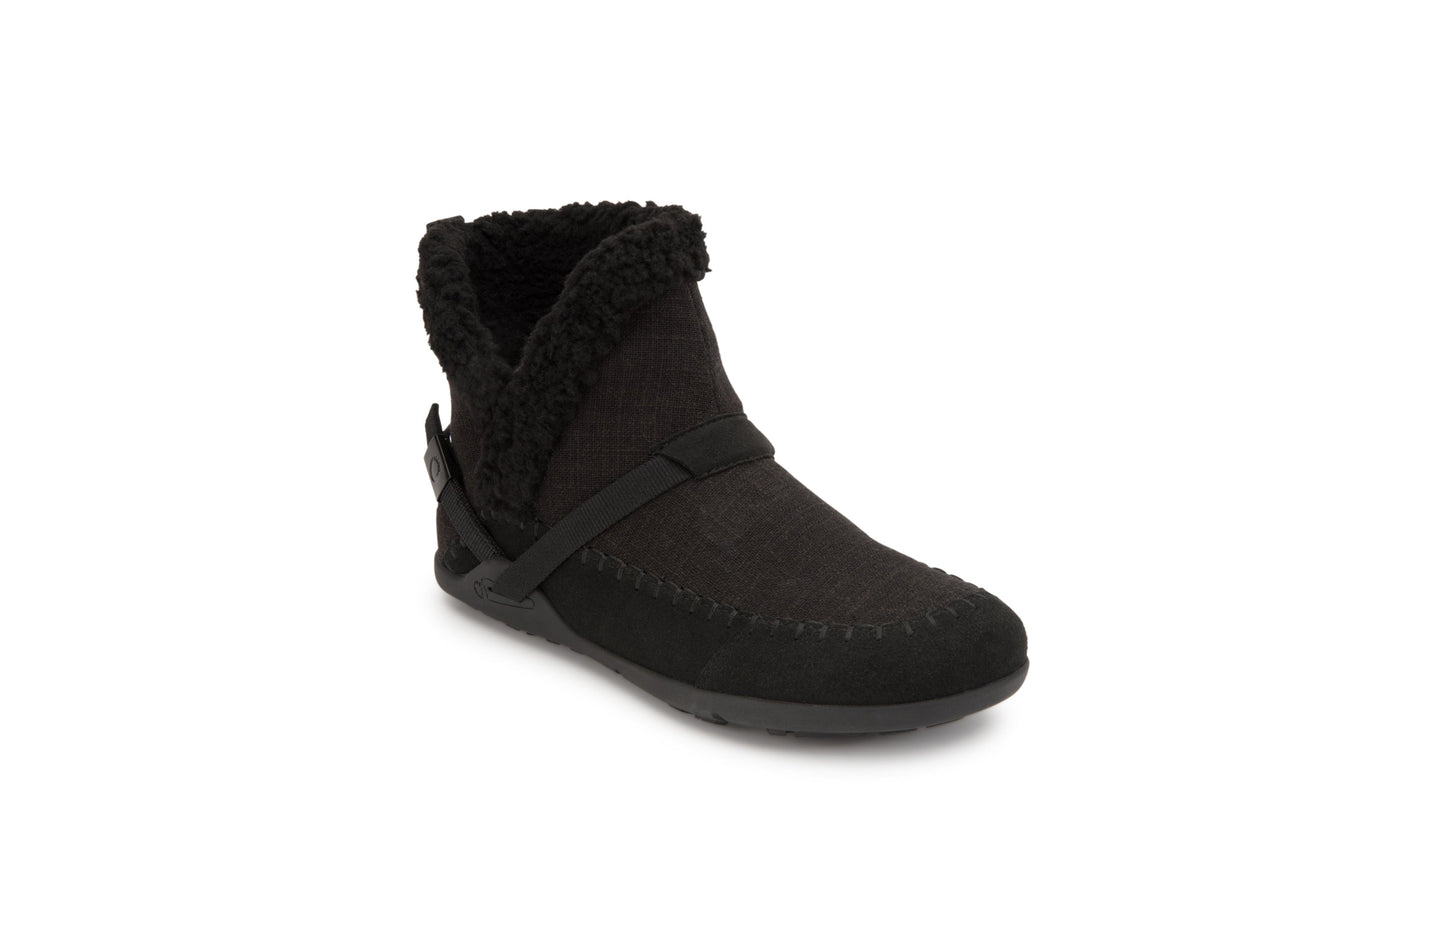 Xero Shoes Ashland barfods kanvas støvler til kvinder i farven black, vinklet